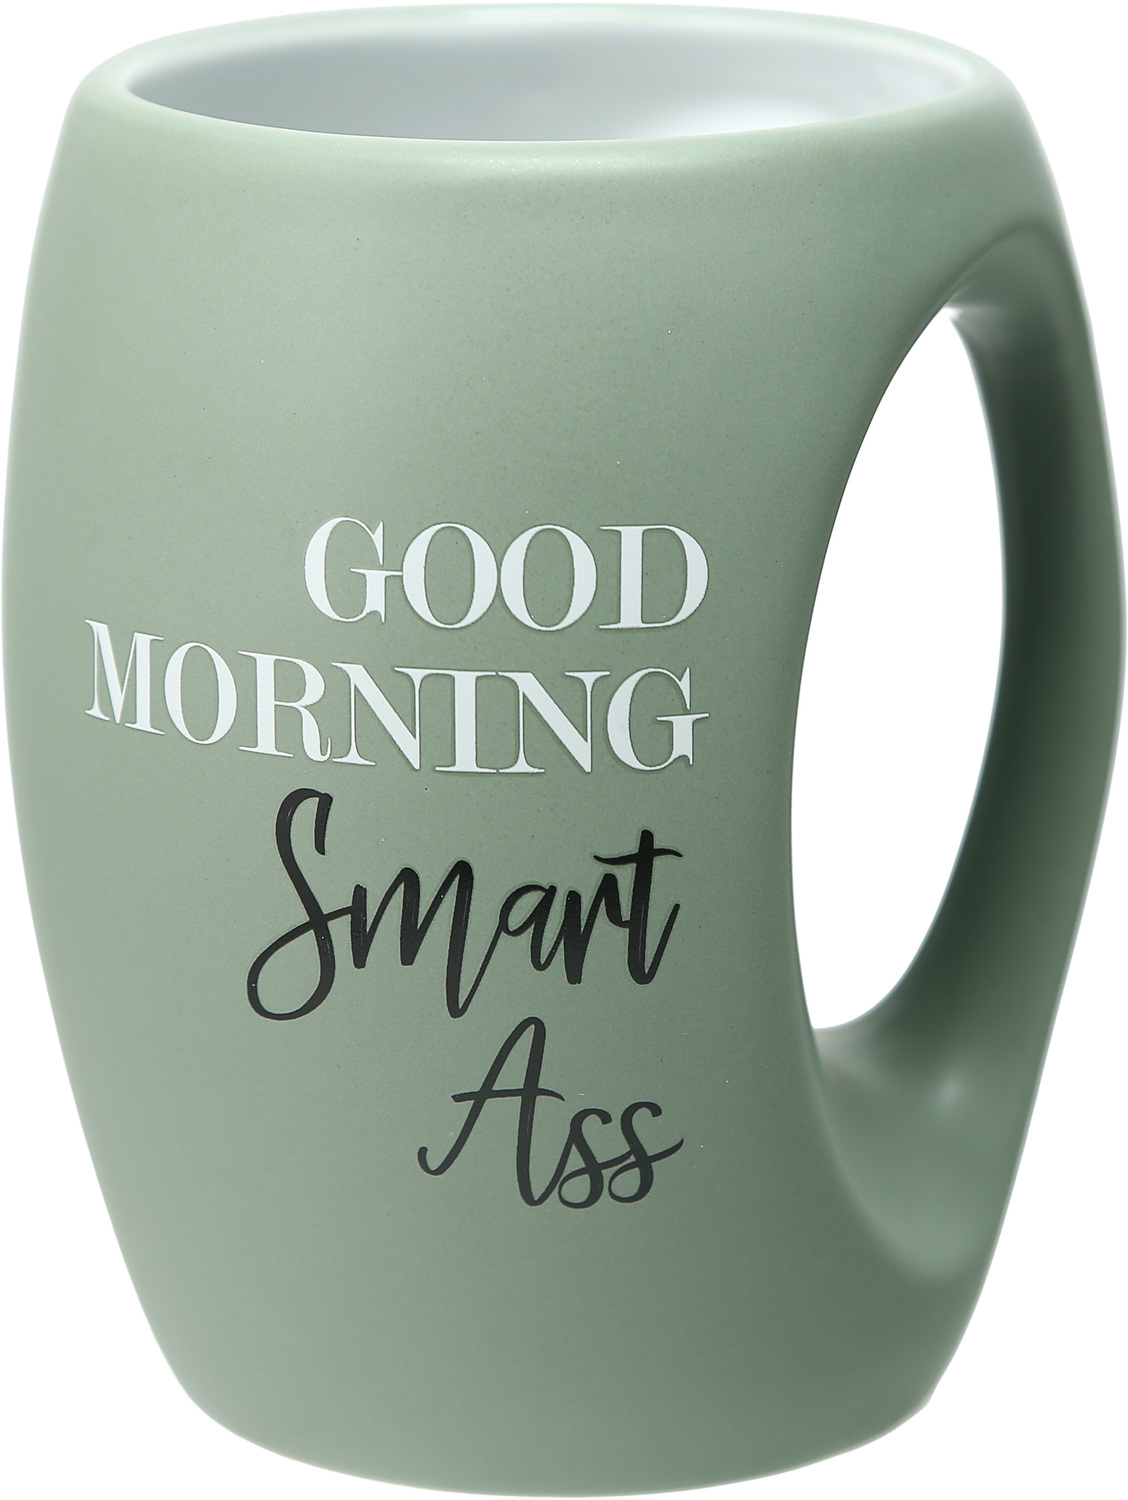 Smart Ass by Good Morning - Smart Ass - 16 oz Cup